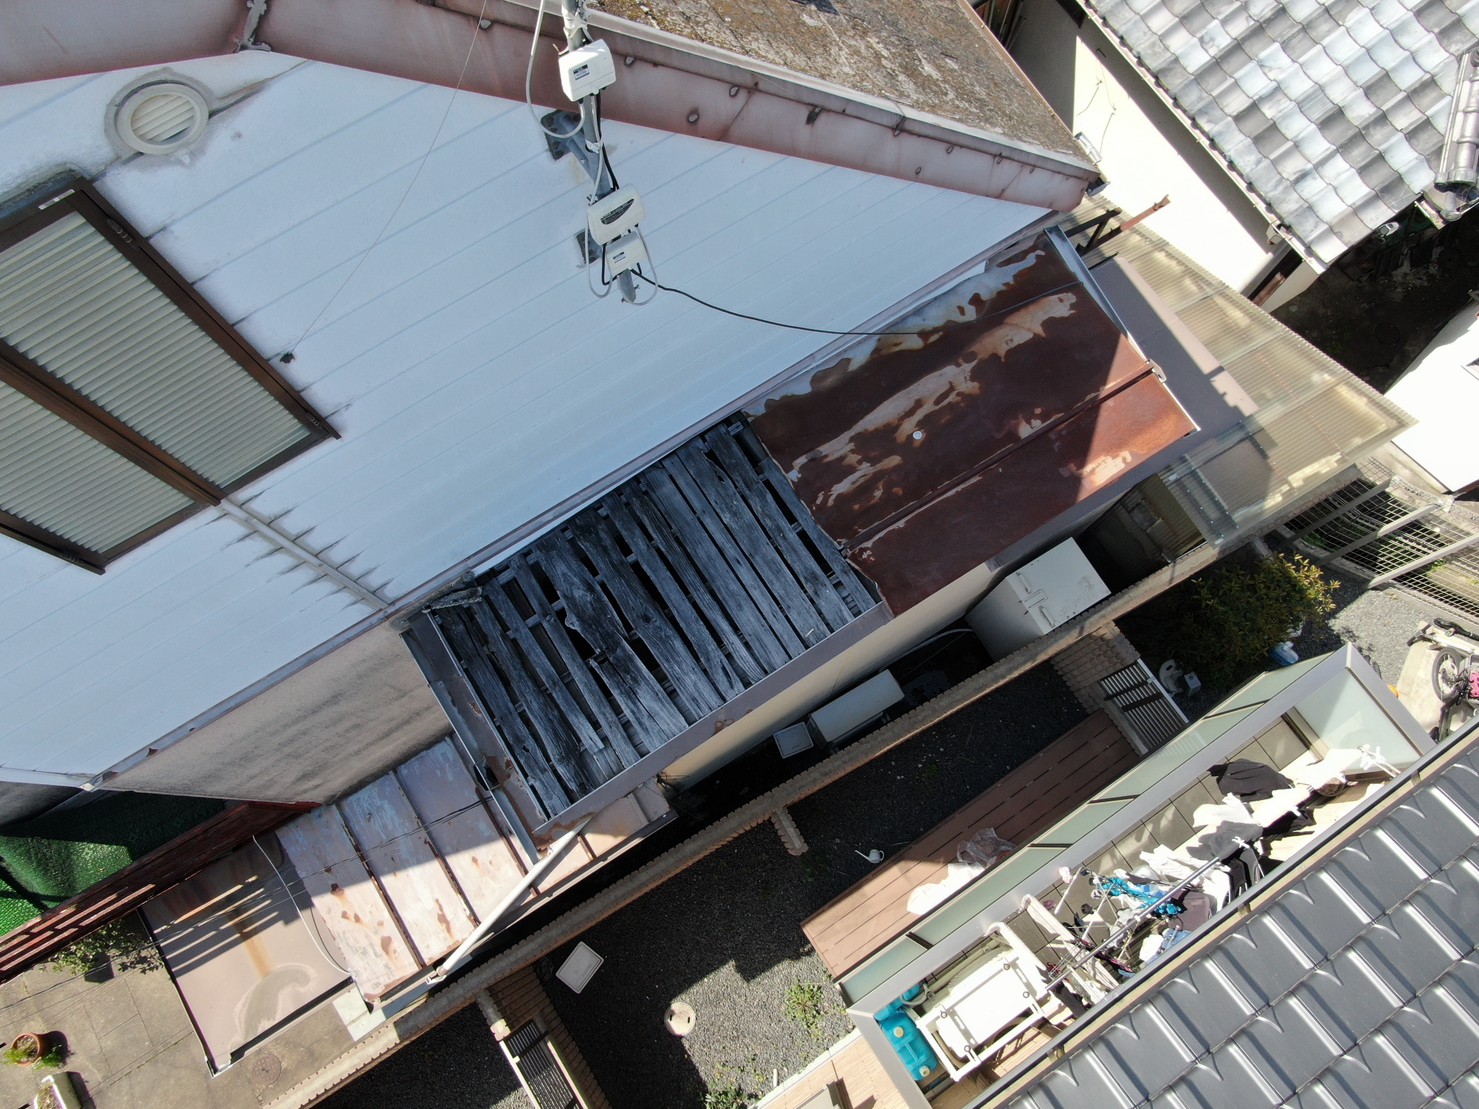 吹田市で下屋根板金の破損による板金交換工事を実施